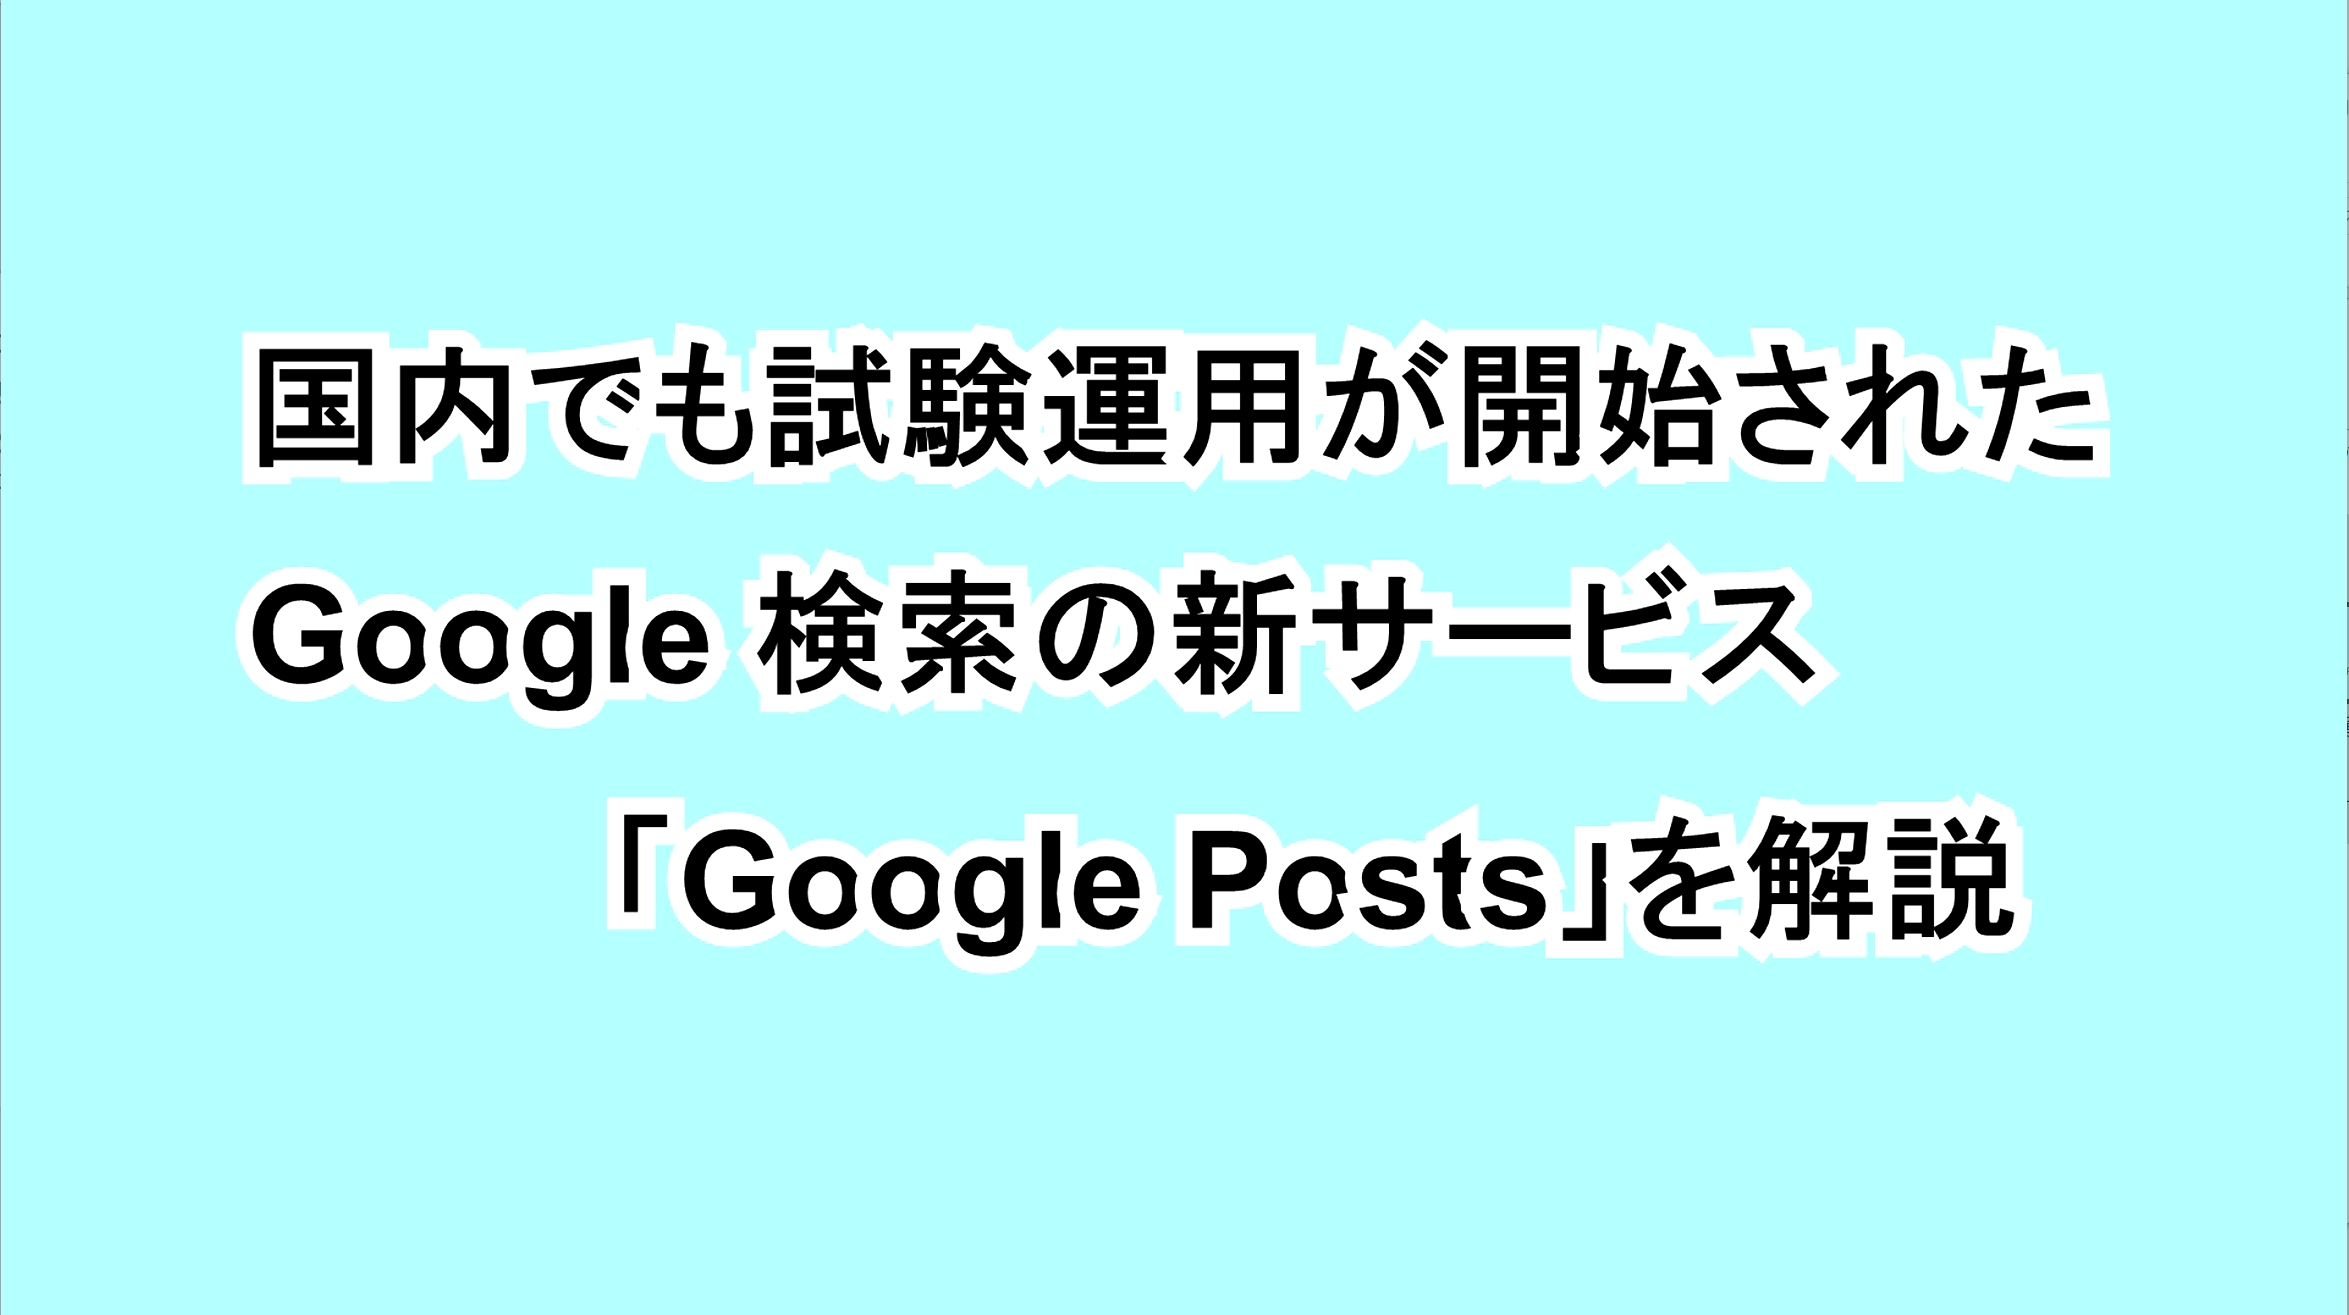 国内でも試験運用が開始されたGoogle検索の新サービス「Google Posts」を解説